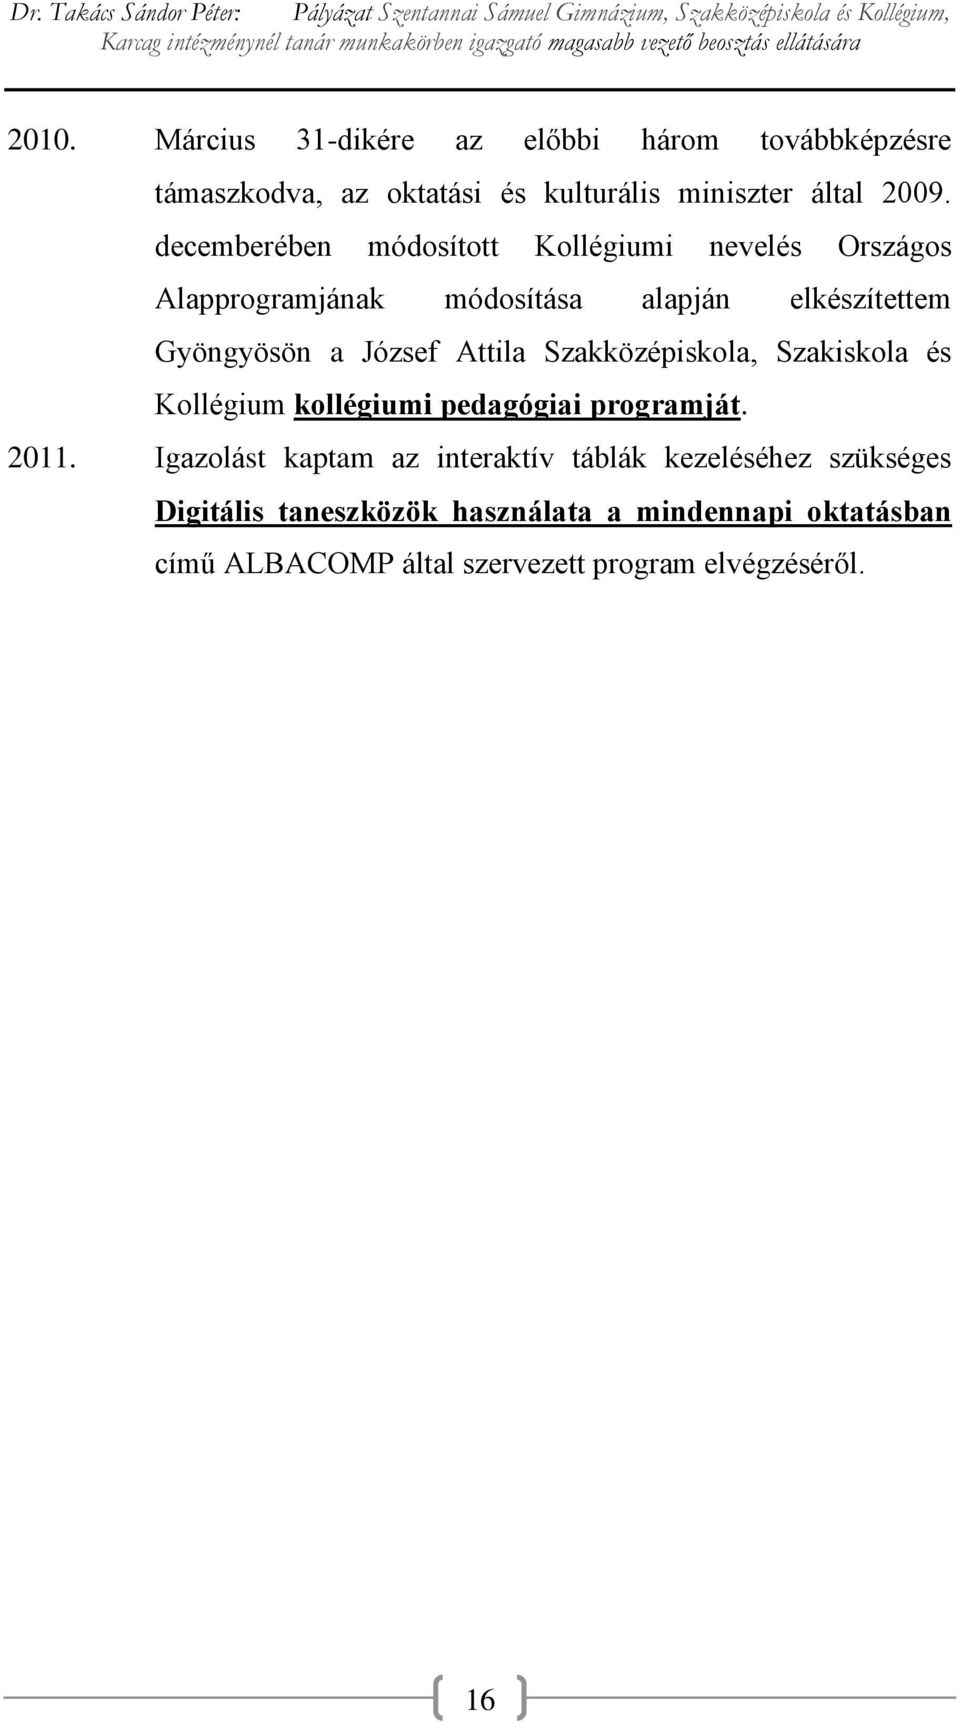 Attila Szakközépiskola, Szakiskola és Kollégium kollégiumi pedagógiai programját. 2011.